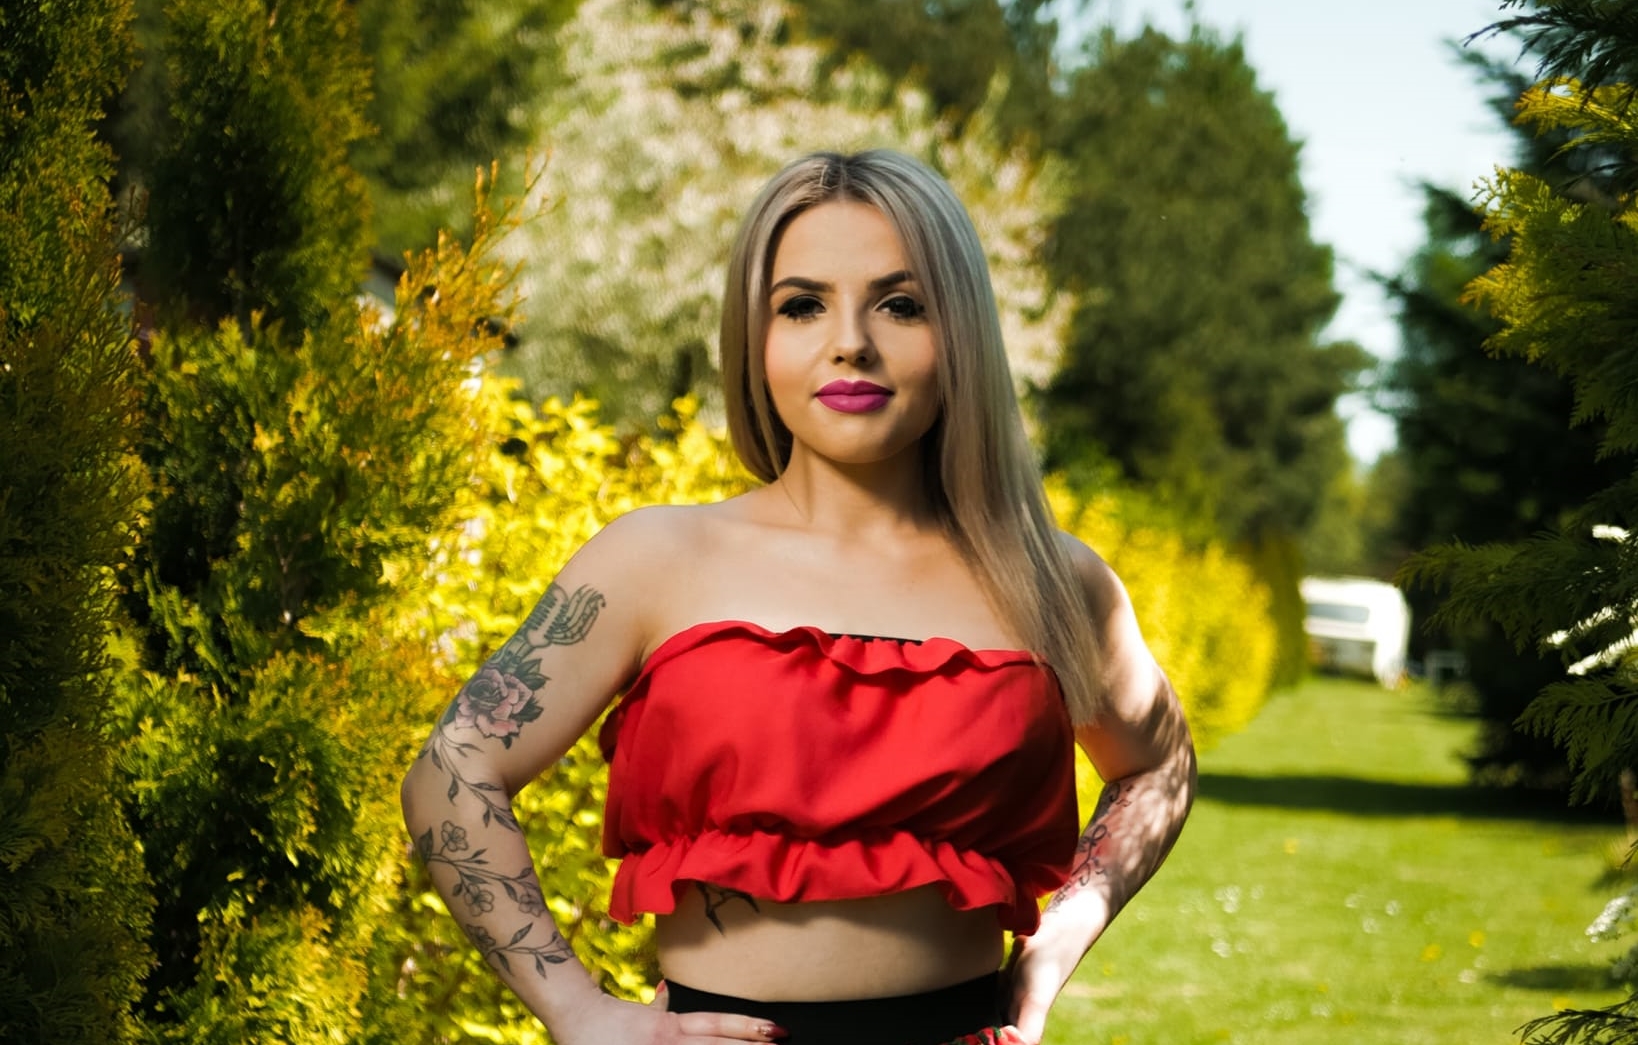 Wokalistka disco polo Ewelina Garzeł, czyli Folk Lady odkrywa swoje tatuaże! Zobacz jak pięknie prezentuje się na najnowszym zdjęciu!